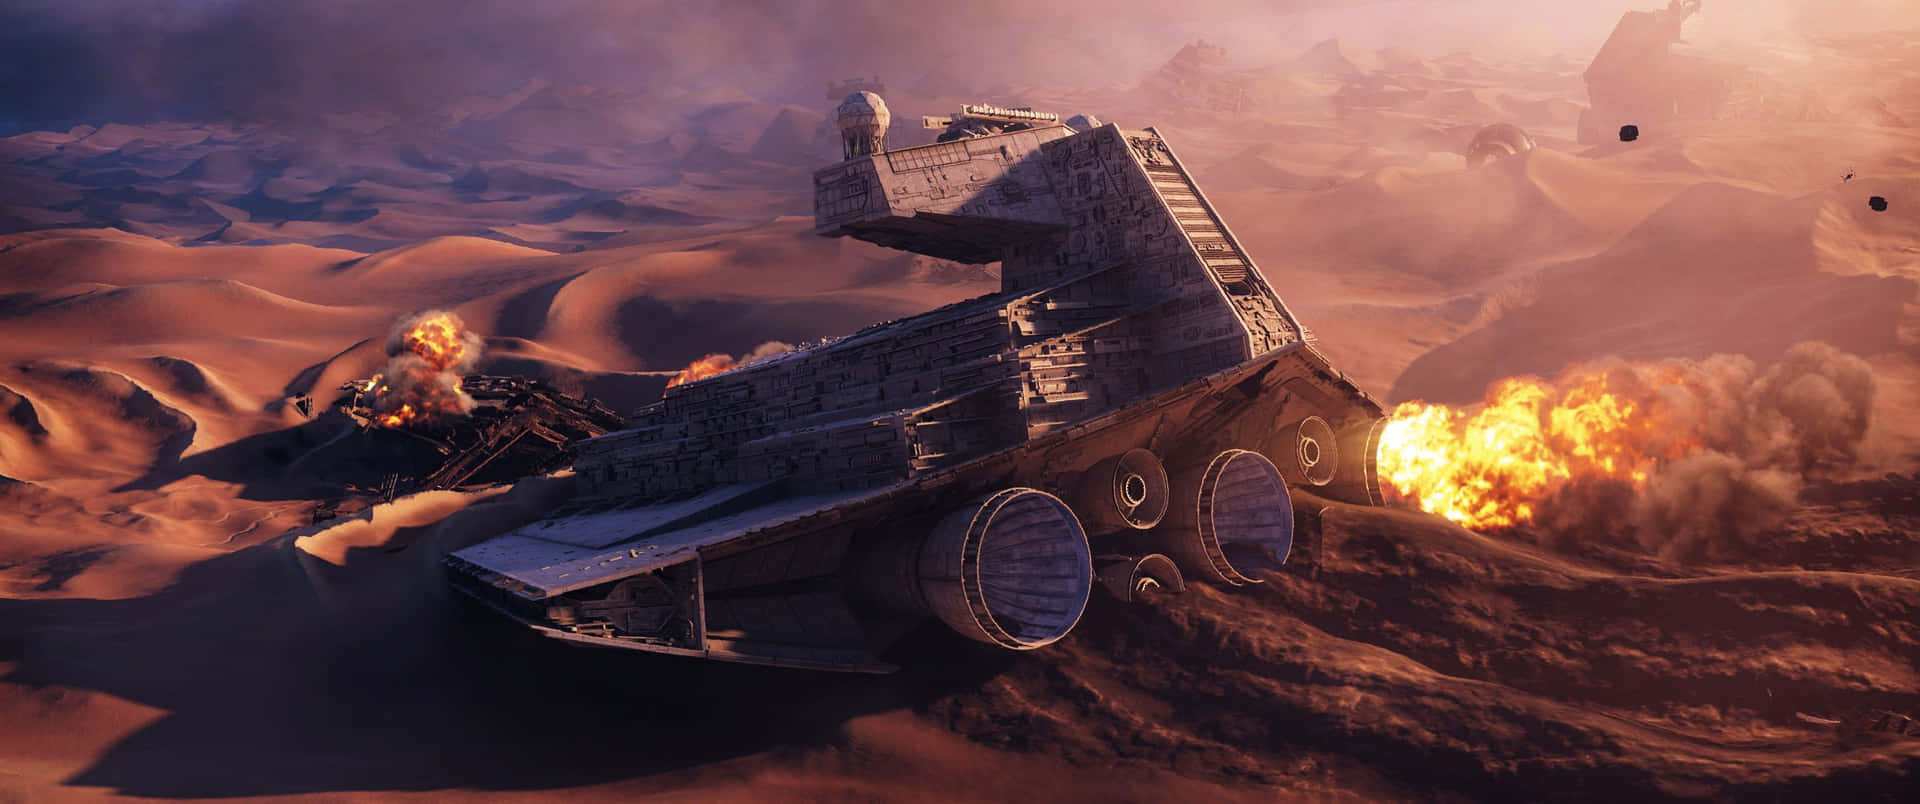 Explore the Final Frontier in Star Wars 3440x1440 Wallpaper